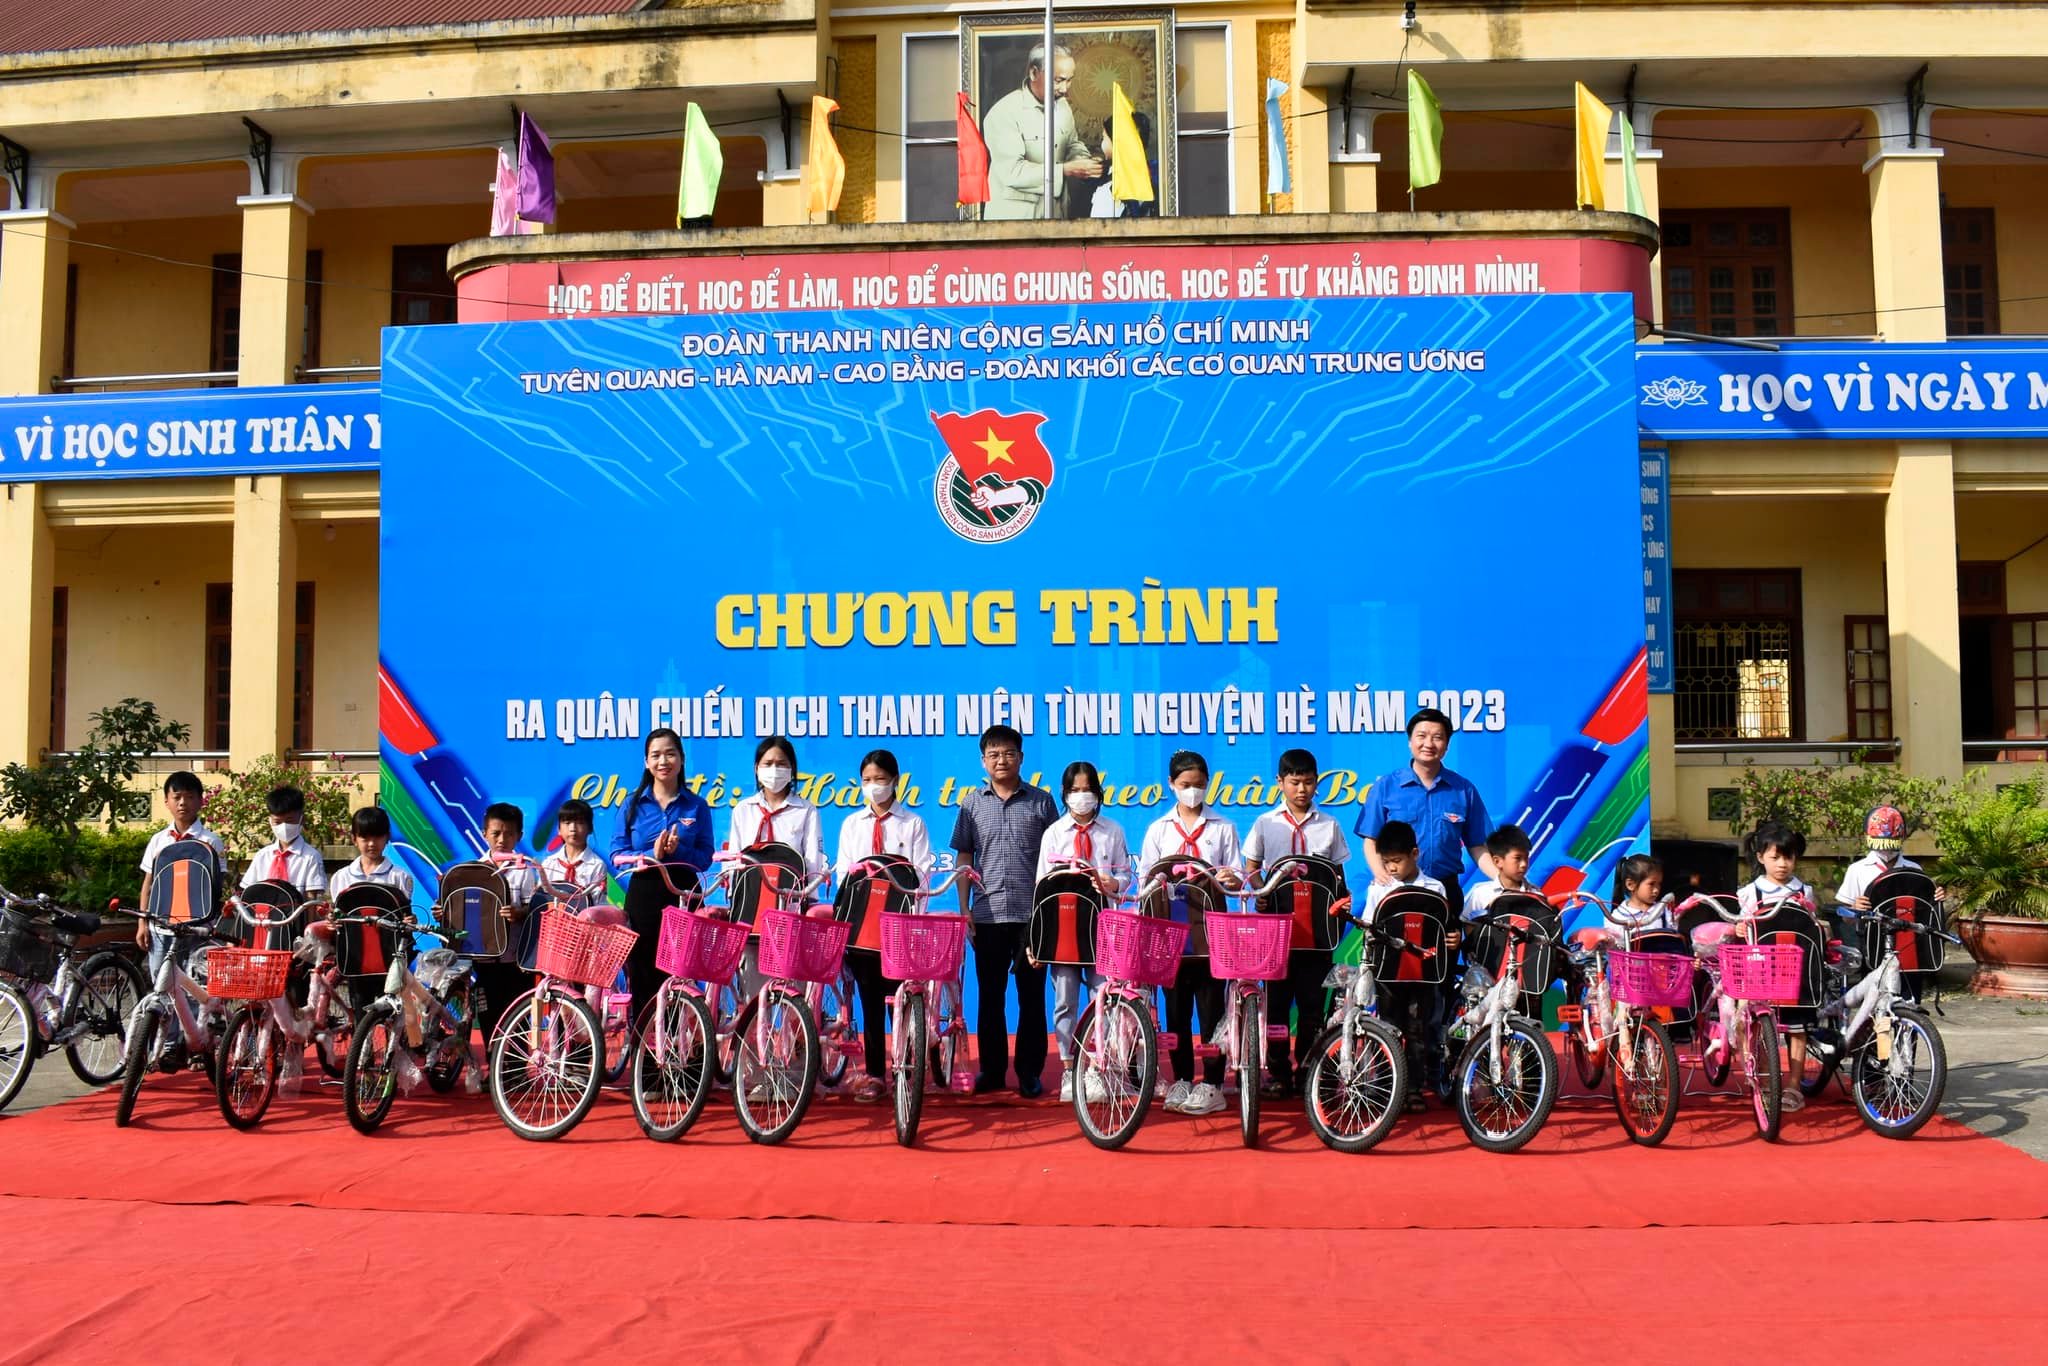 Tuyên Quang: Ra quân Chiến dịch Thanh niên tình nguyện hè 2023 với chủ đề “Hành trình theo chân Bác”